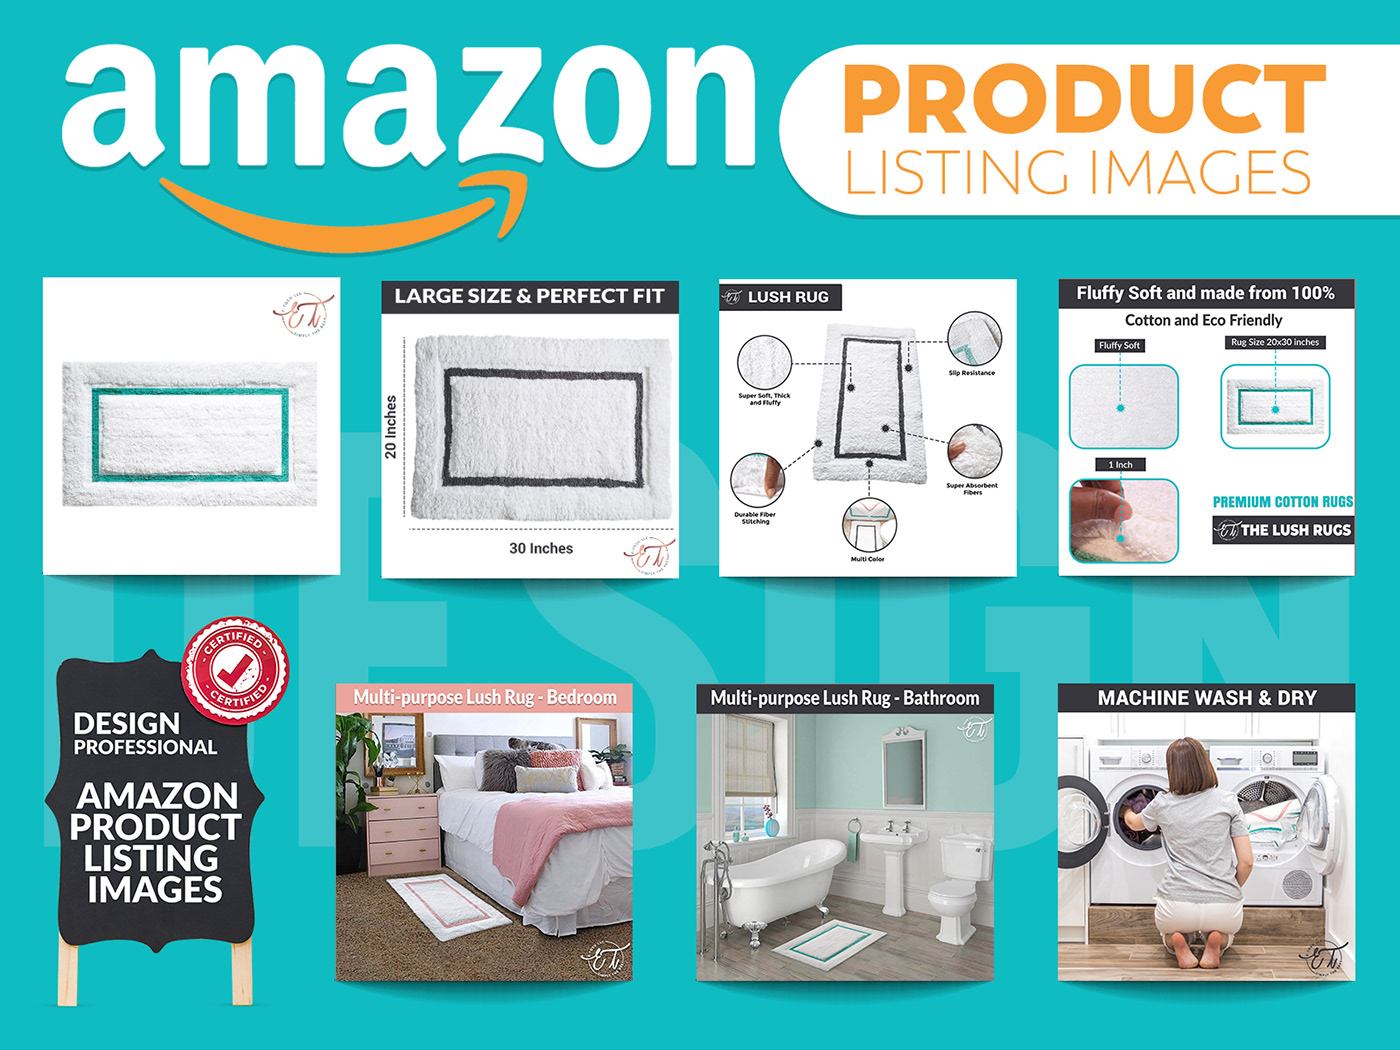 Amazon product editing Amazon product listing amazon store Background removal infographic design lifestyle image edit Photo Retouching photography editing Product Editing Product Infographic